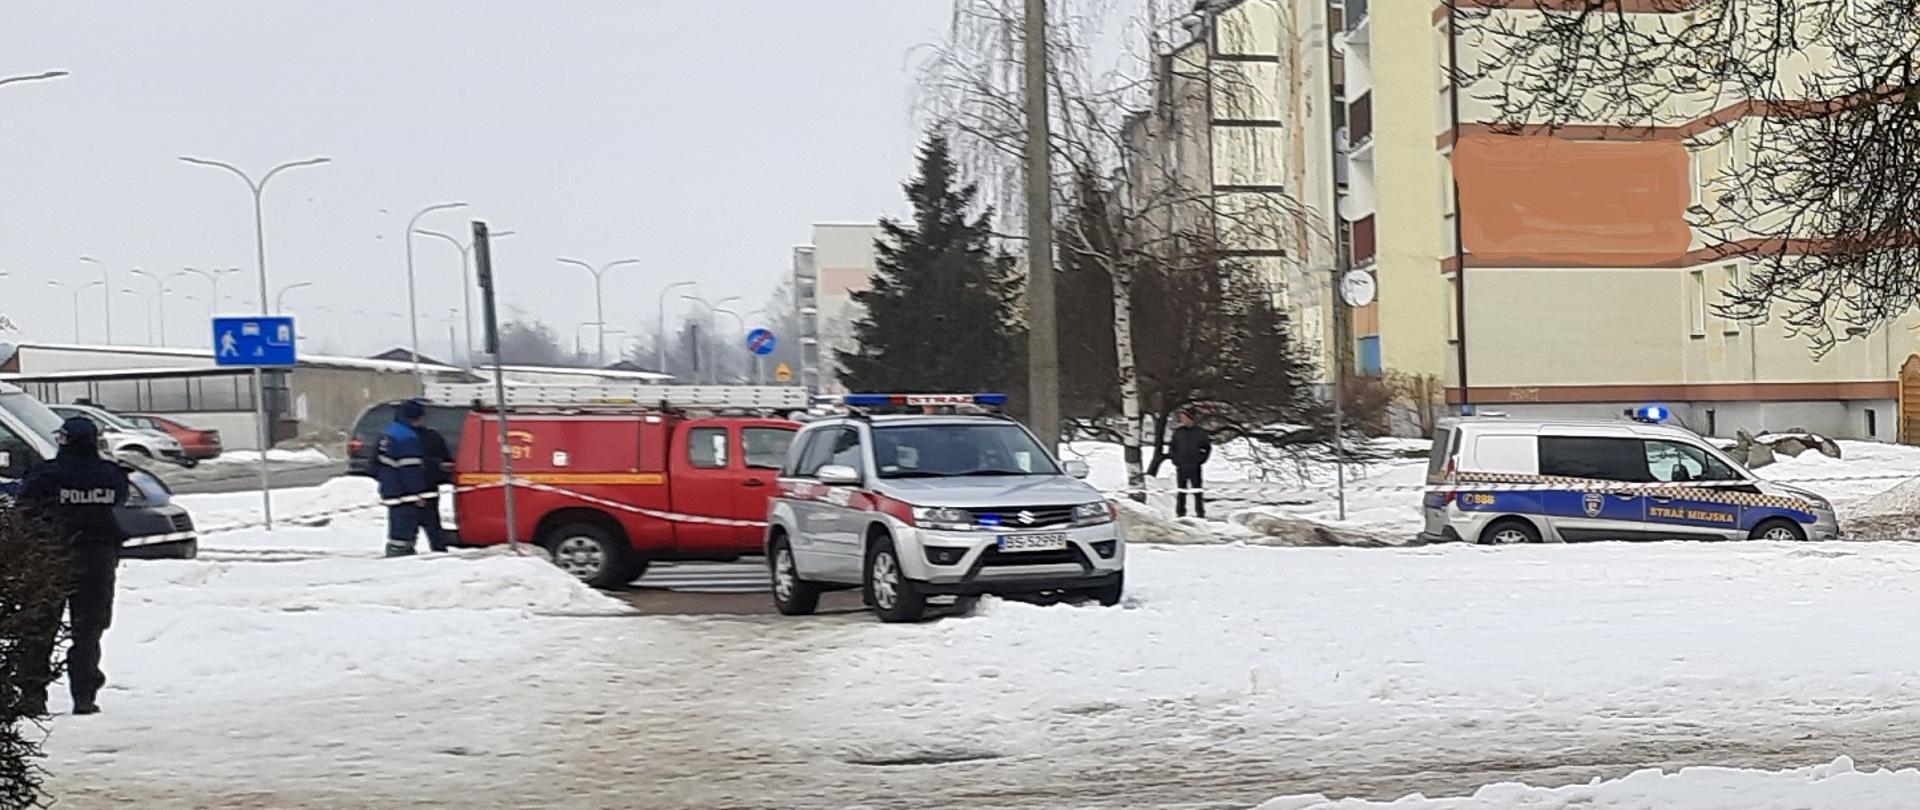 Zdjęcie obrazuje osobowy samochód strażacki osobowy samochód straży miejskiej samochód pogotowia energetycznego w lewej stronie zdjęcia stoi policjant w tle kilka osób i budynki. Aura zimowa.